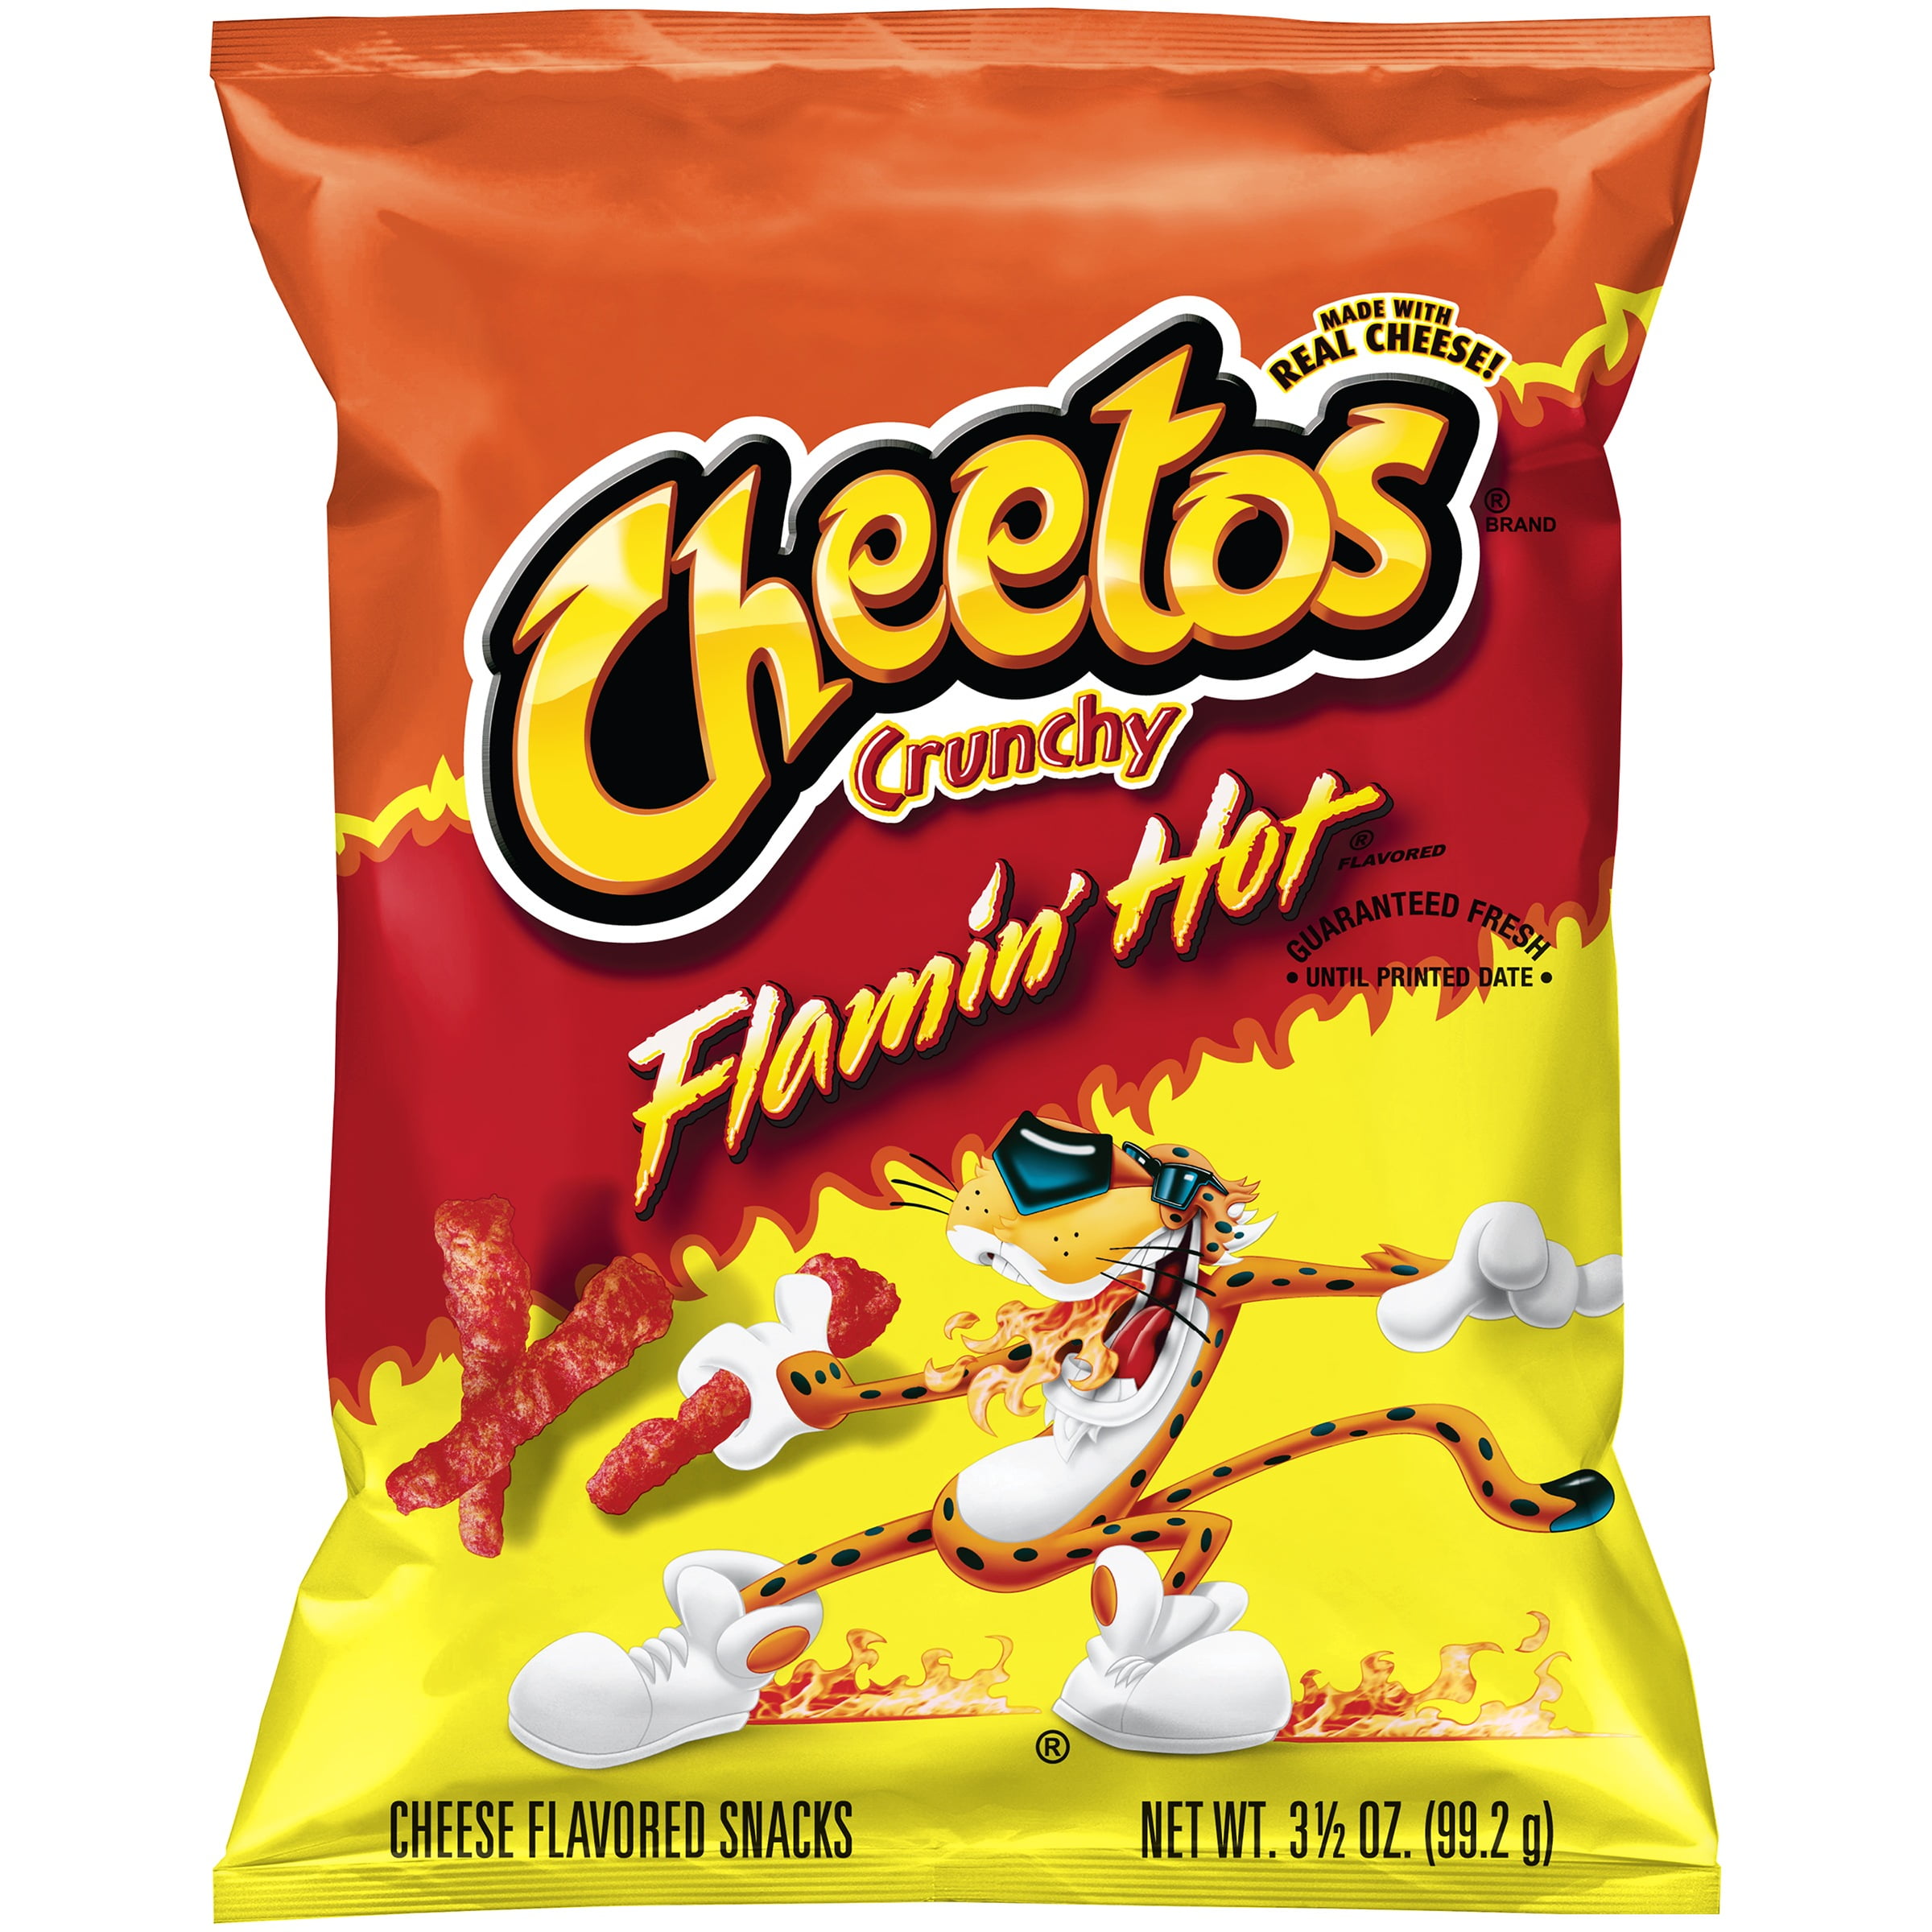 Cheetos Crunchy Flamin' Hot Cheese Flavored Snacks, 3.5 oz Bag - Walma...